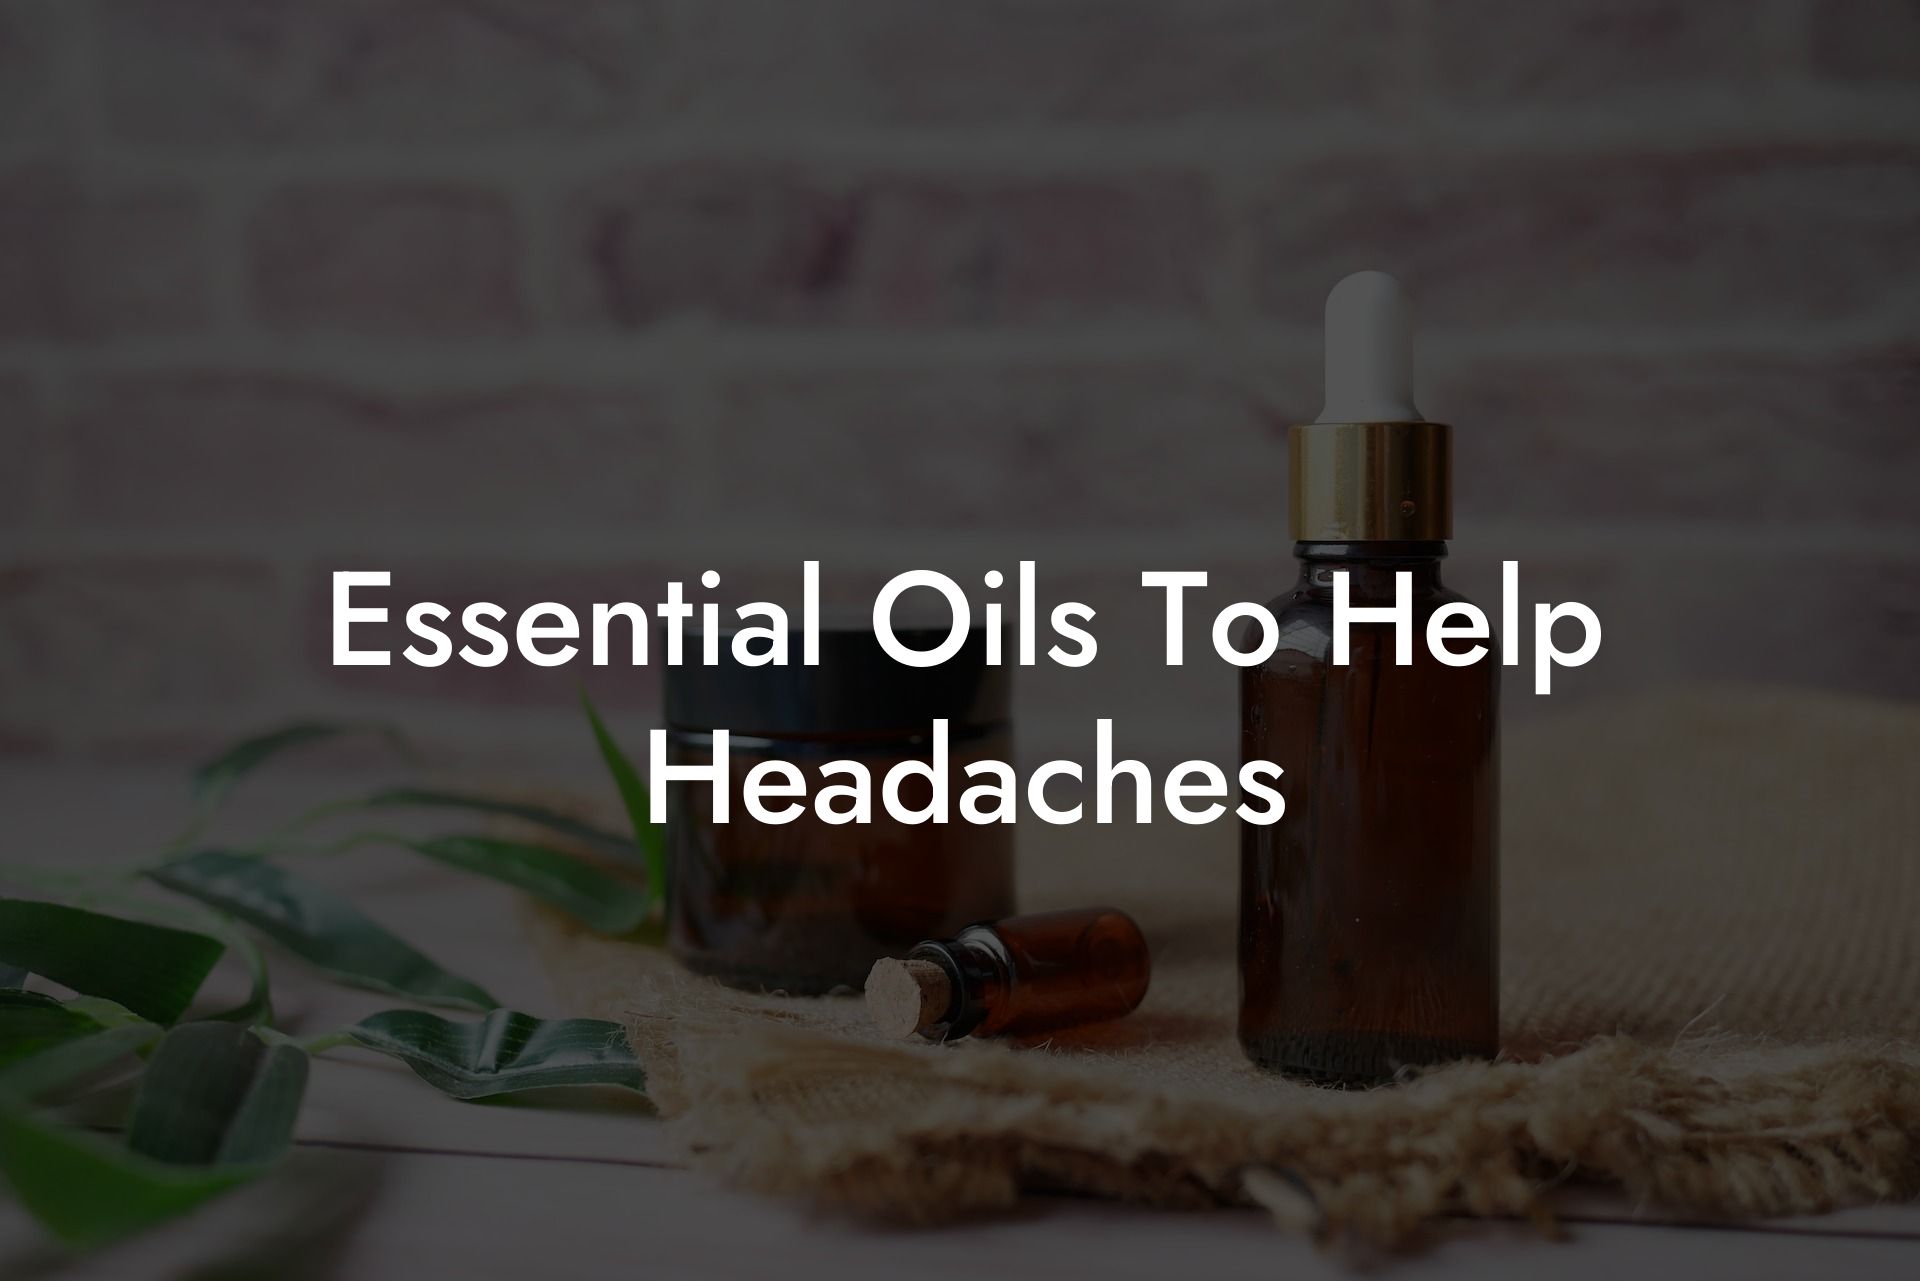 Essential Oils To Help Headaches